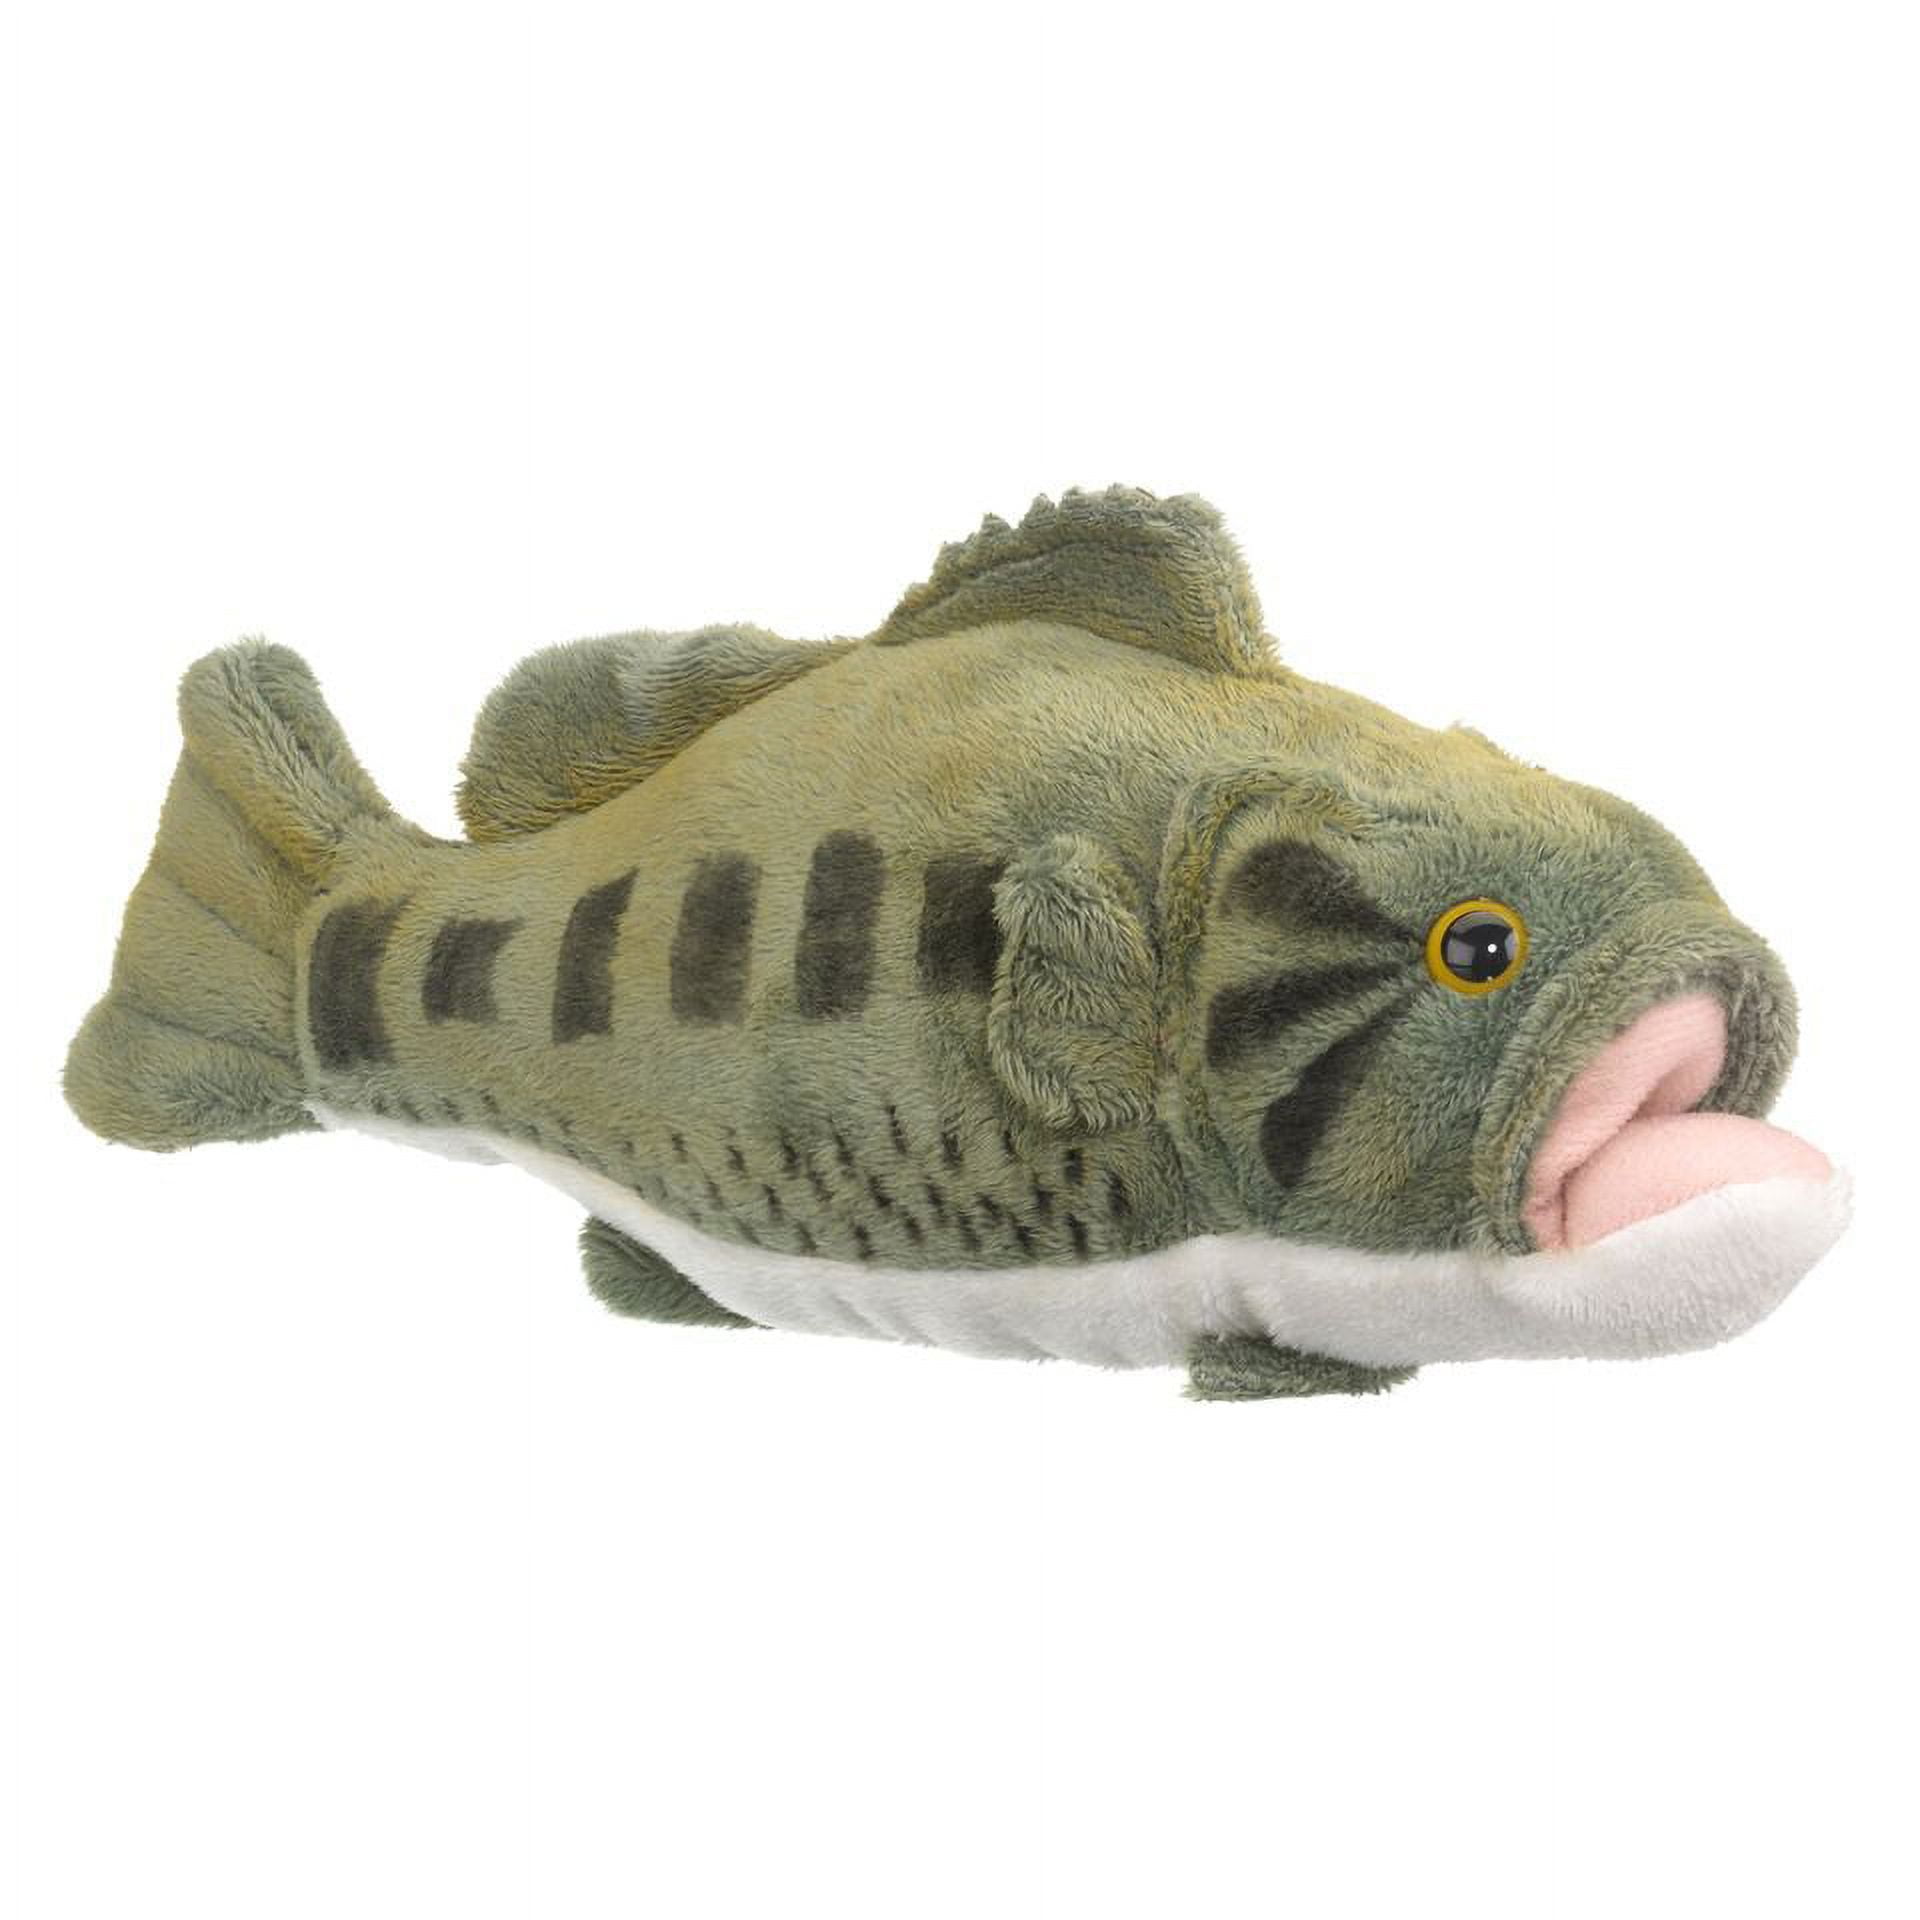 10 Largemouth Bass Fish Plush Stuffed Animal Toy